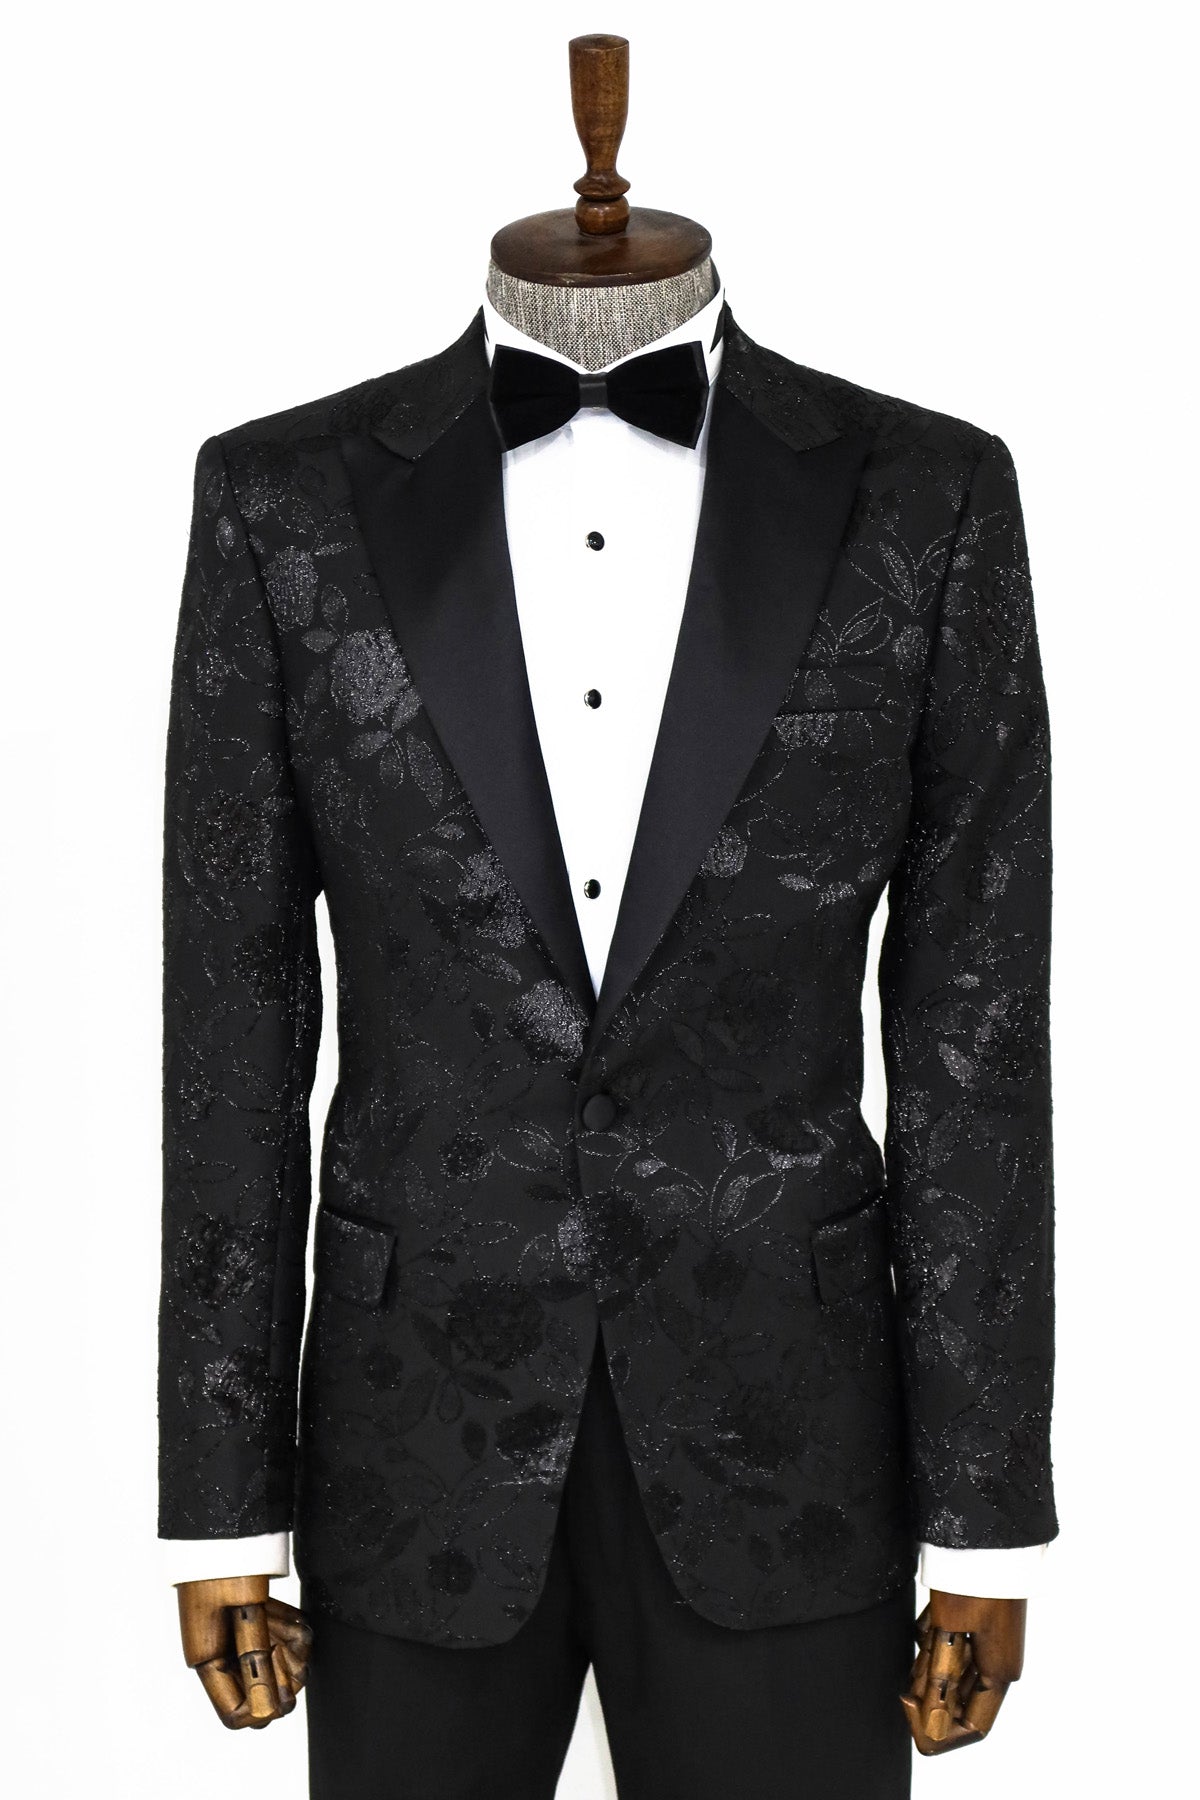 High-End Men's Black on Black Blazer with Floral Design | KCT Menswear ...